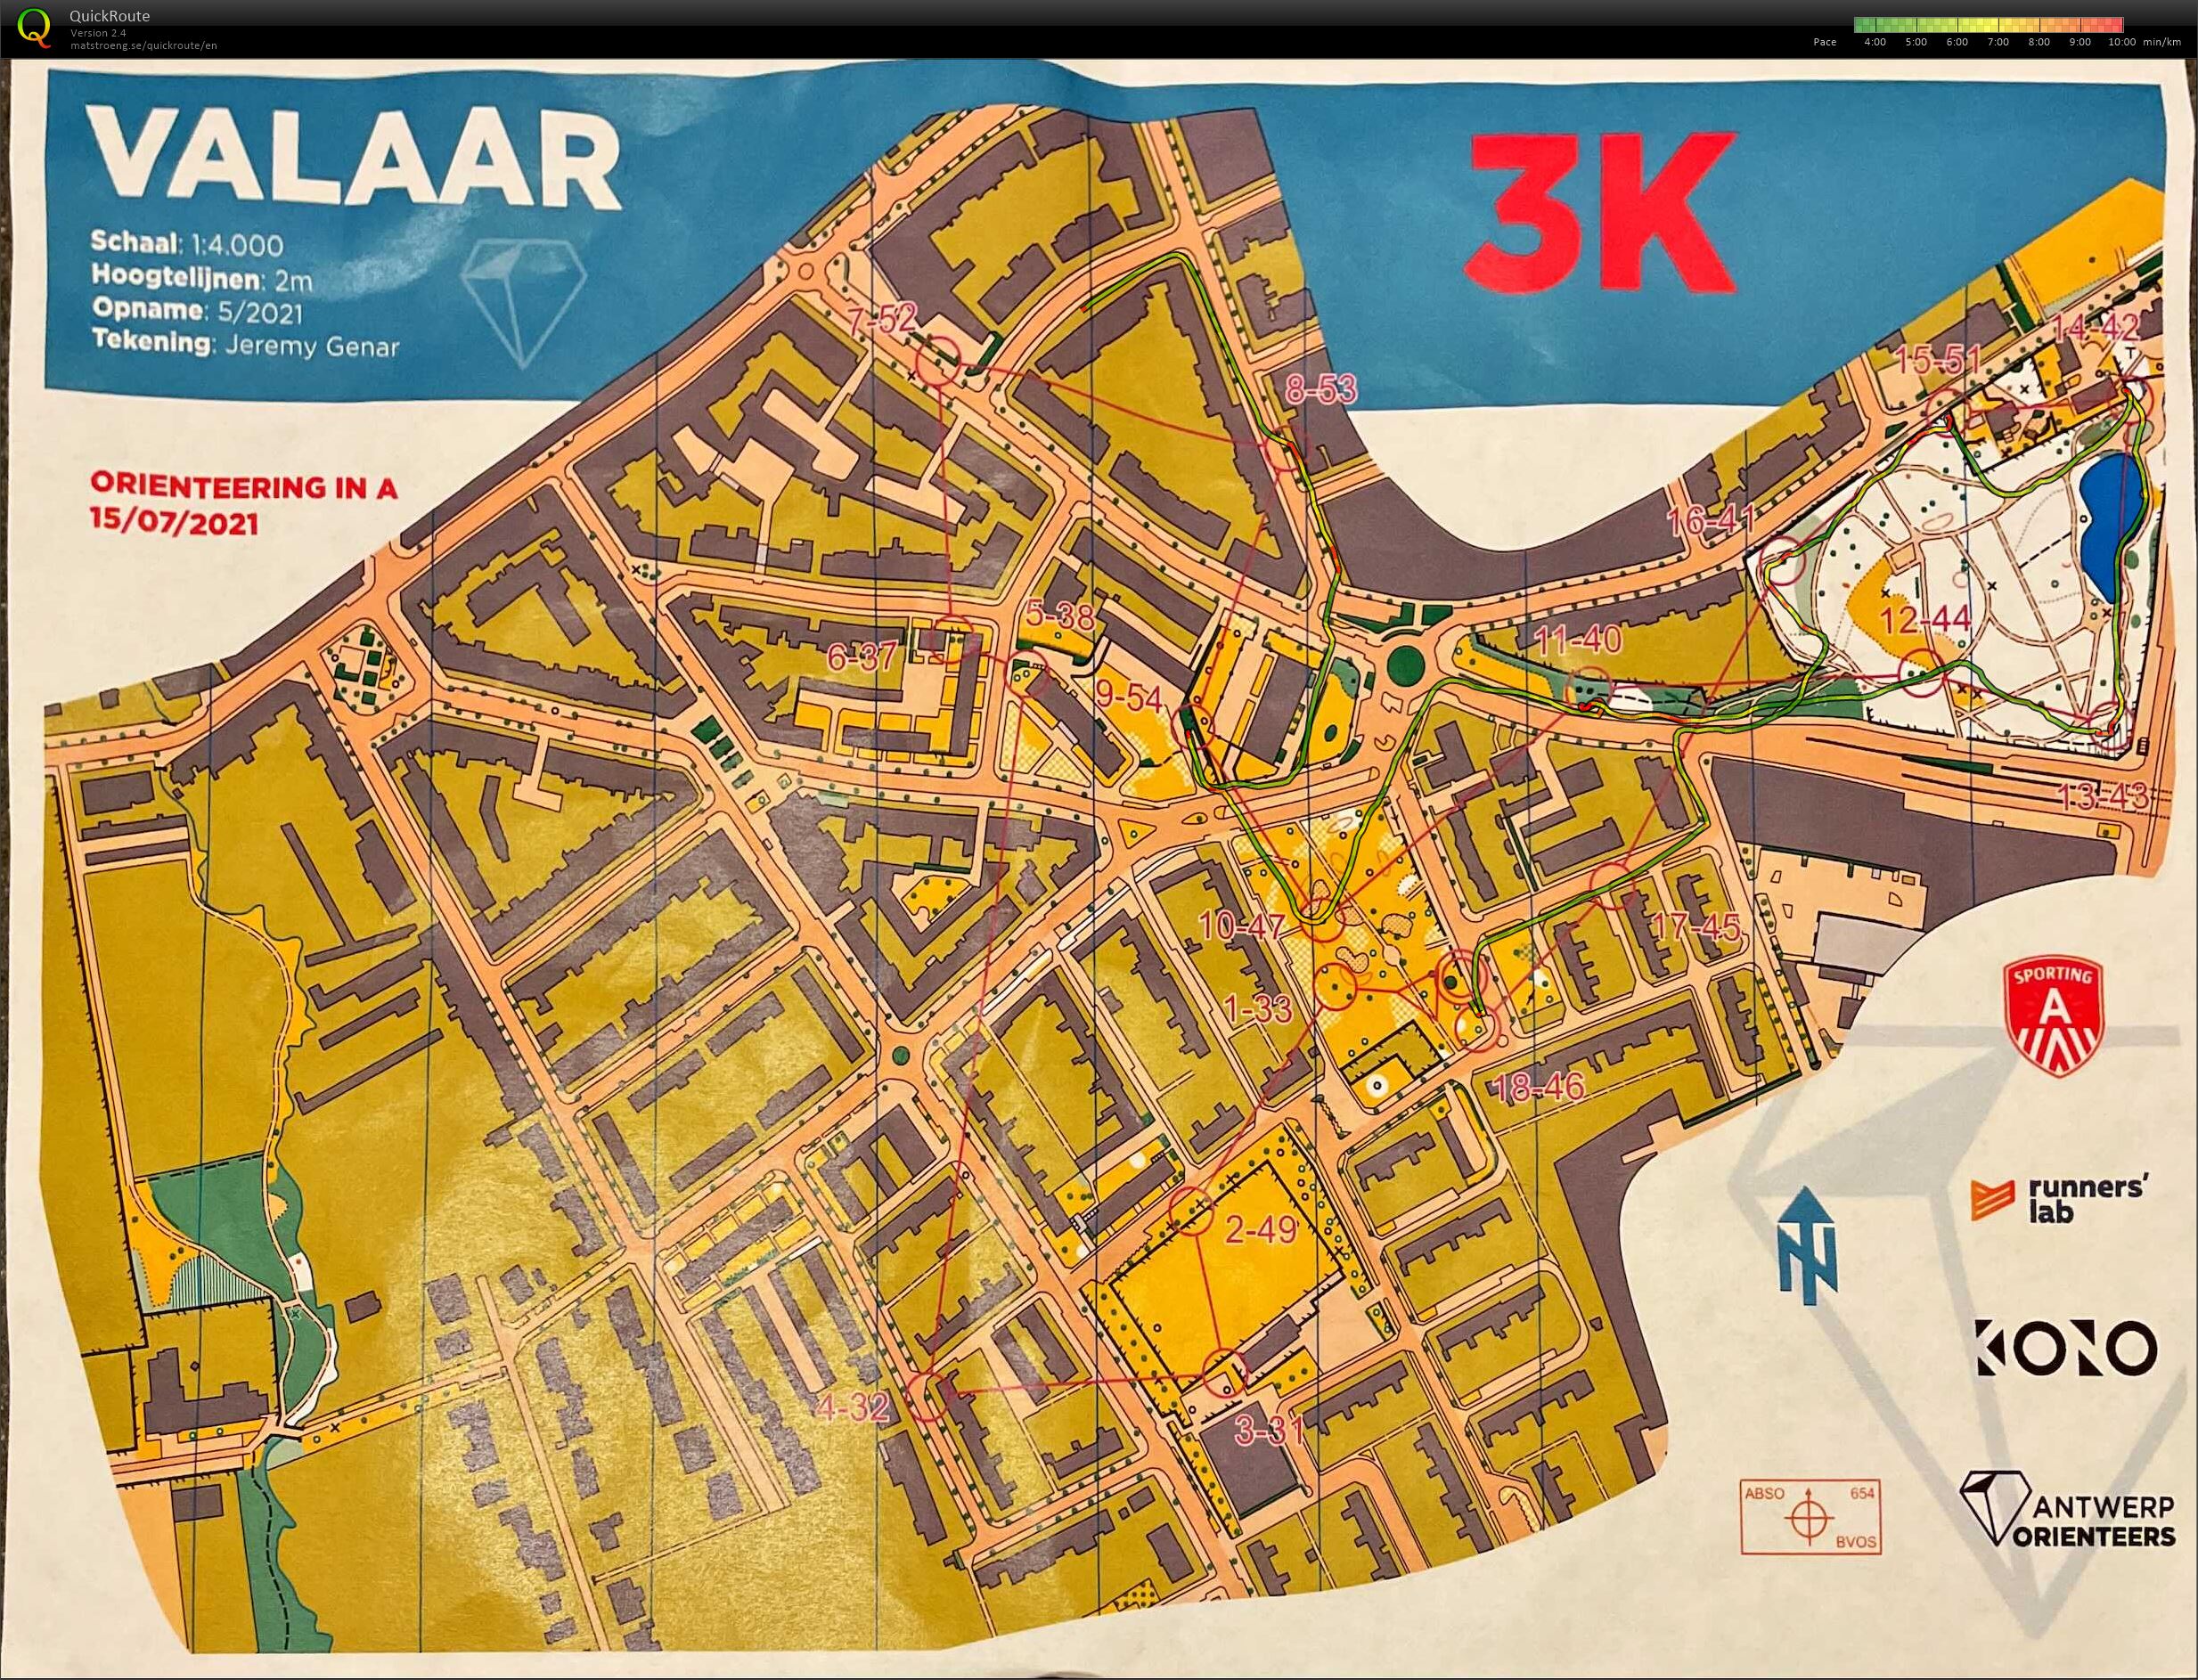 Orienteering in A - Wilrijk Valaar - 3K (15-07-2021)